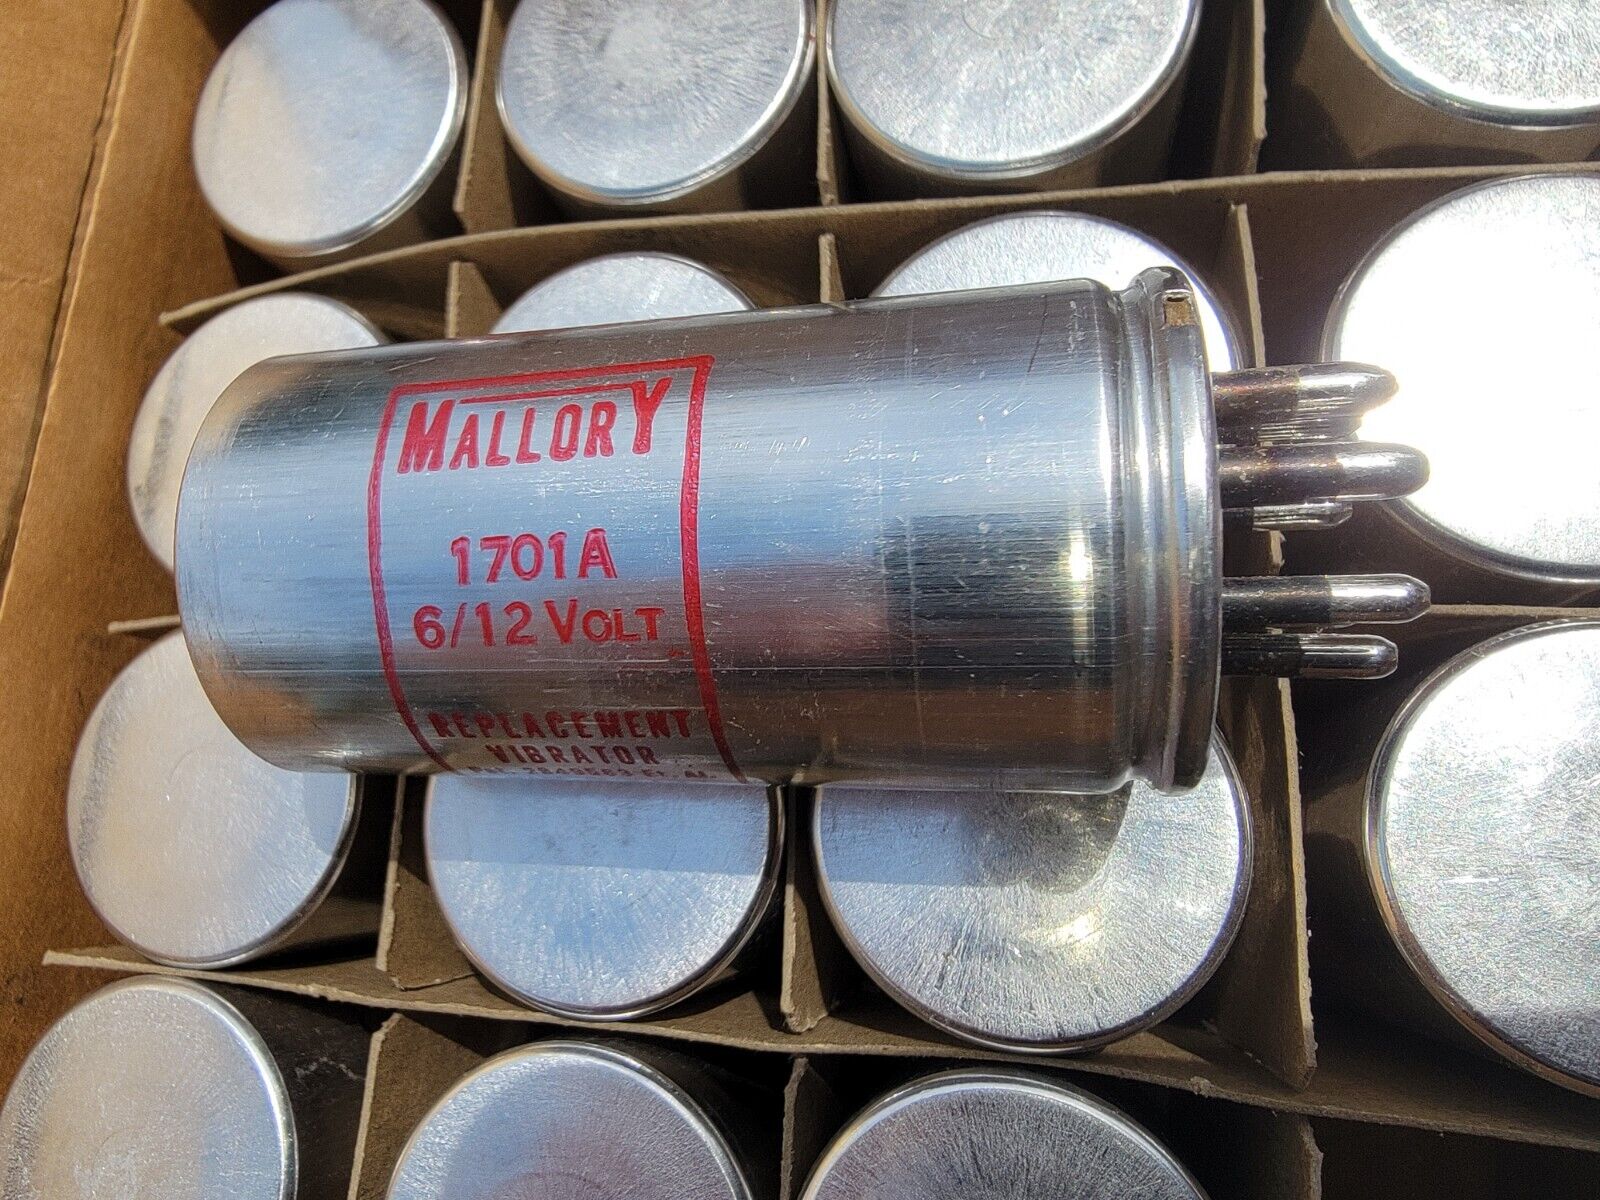 Mallory Vintage Tube Radio Vibrator 1701A 6/12V 7-pin  #1701A